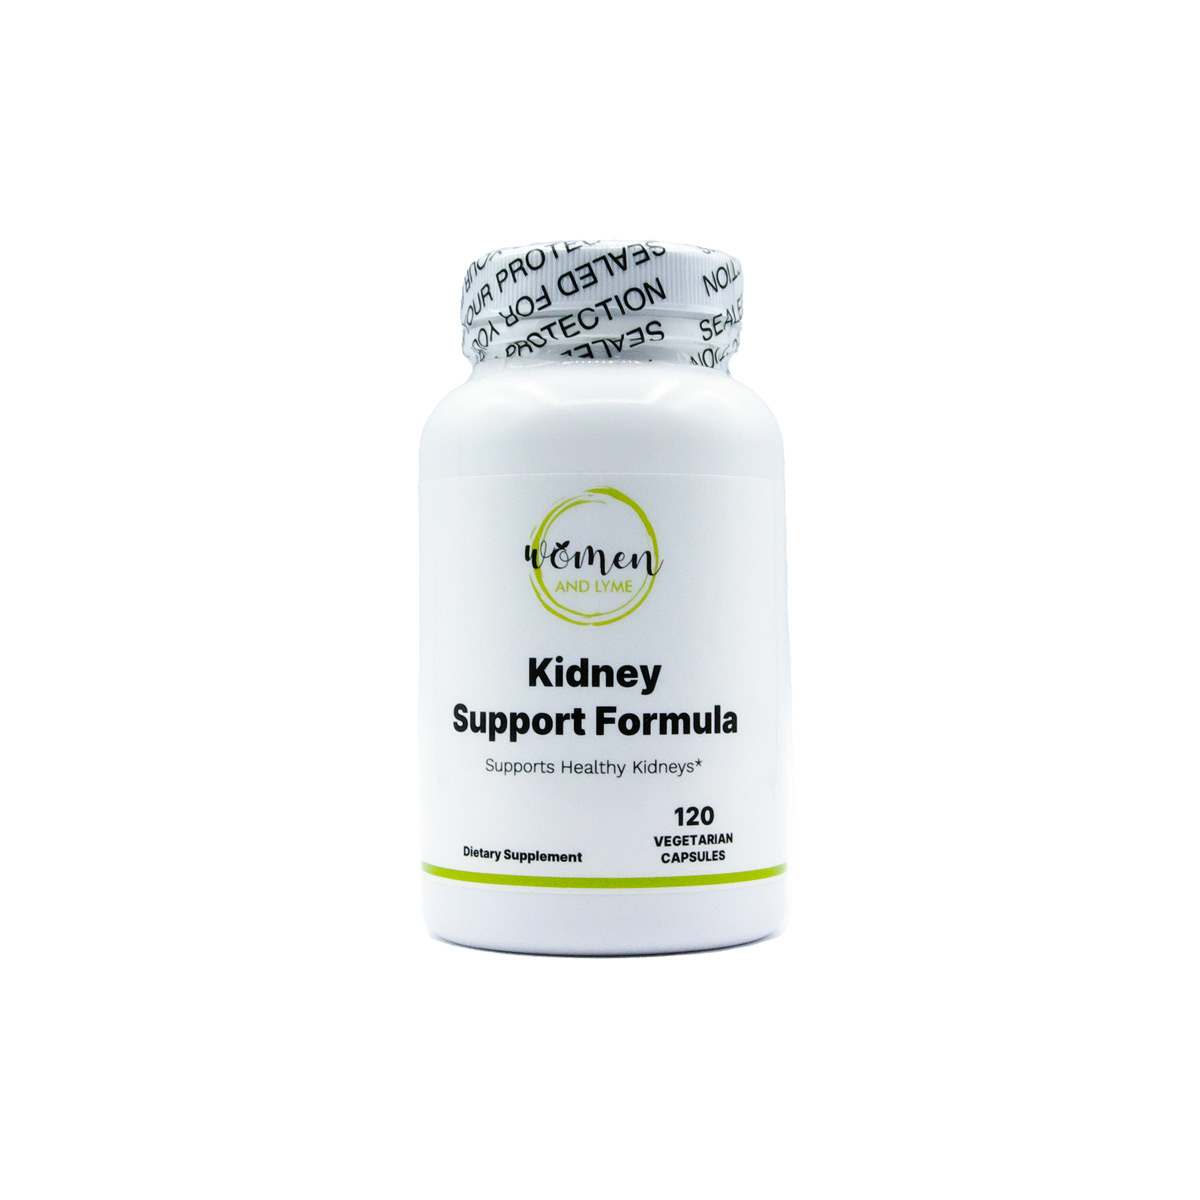 Kidney Support Formula